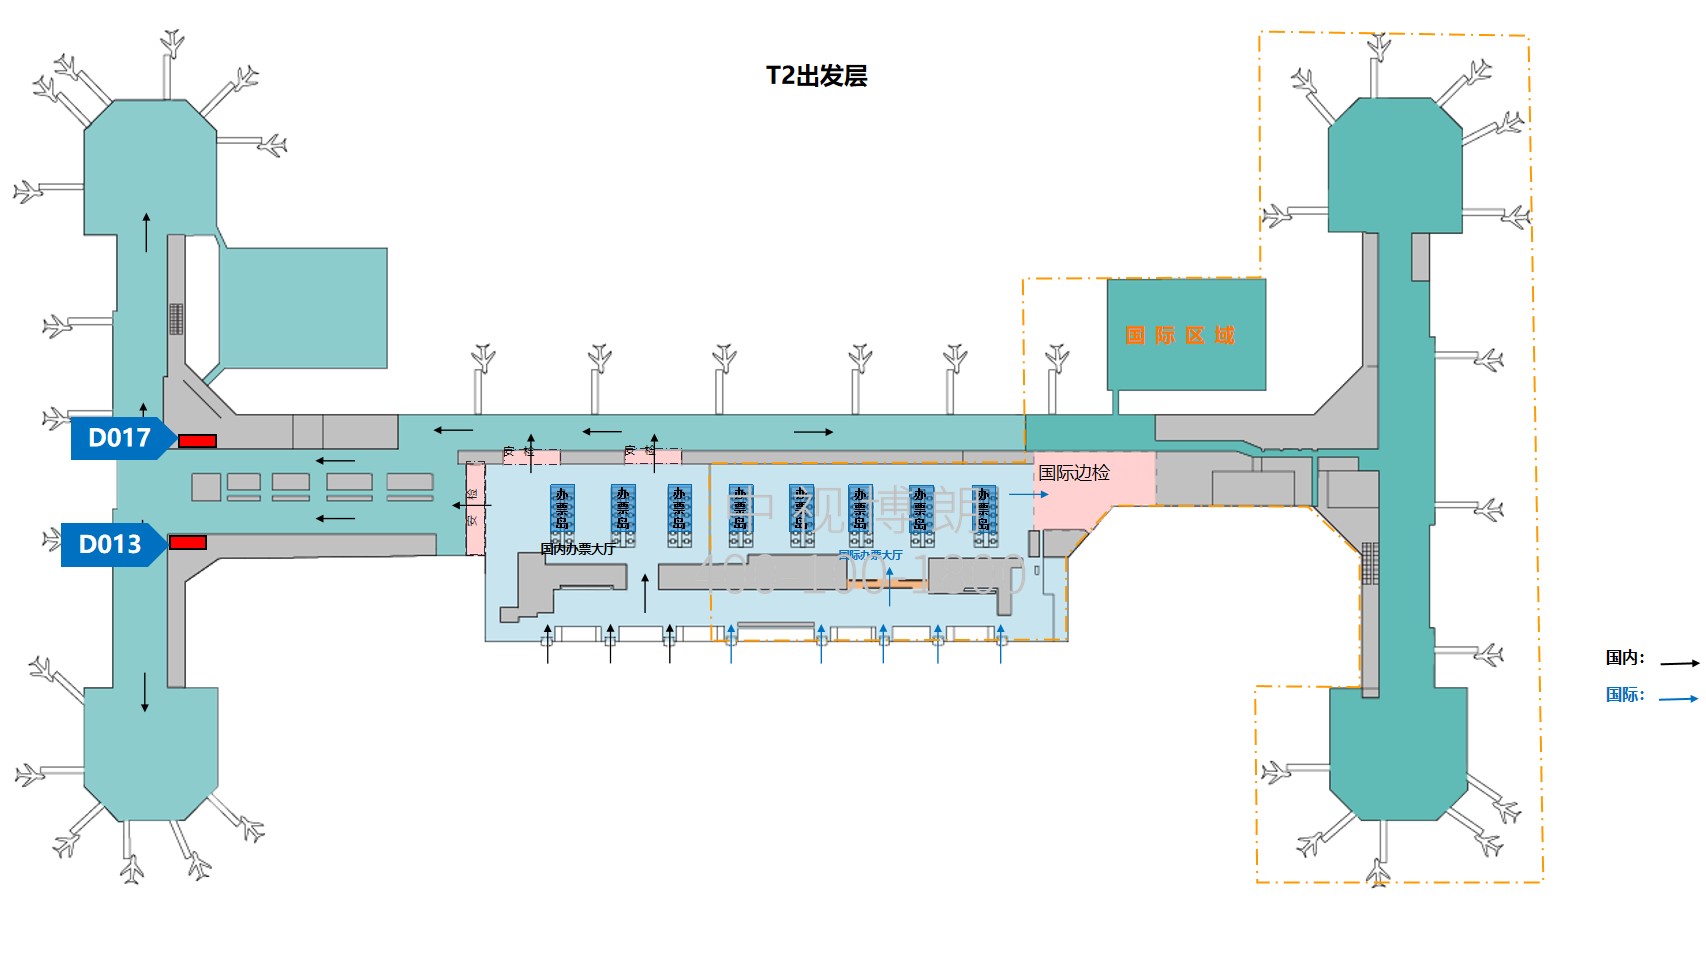 北京首都机场广告-T2 Domestic Departure East West Corridor Light Box Set位置图